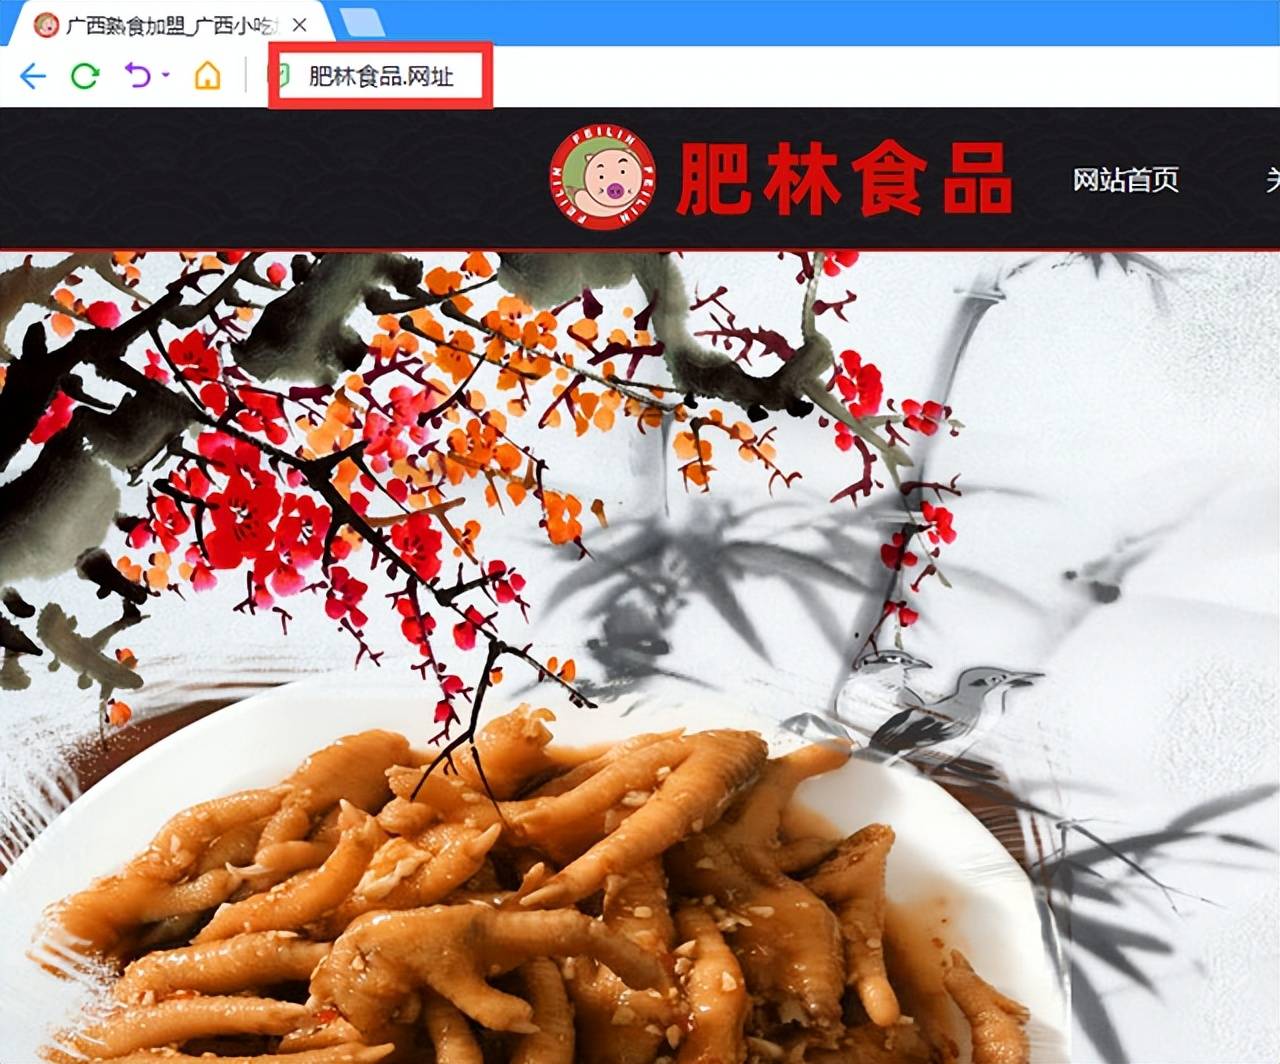 新2网址_网址域名京客网：肥林食品启用网址中文域名品牌保护新战略